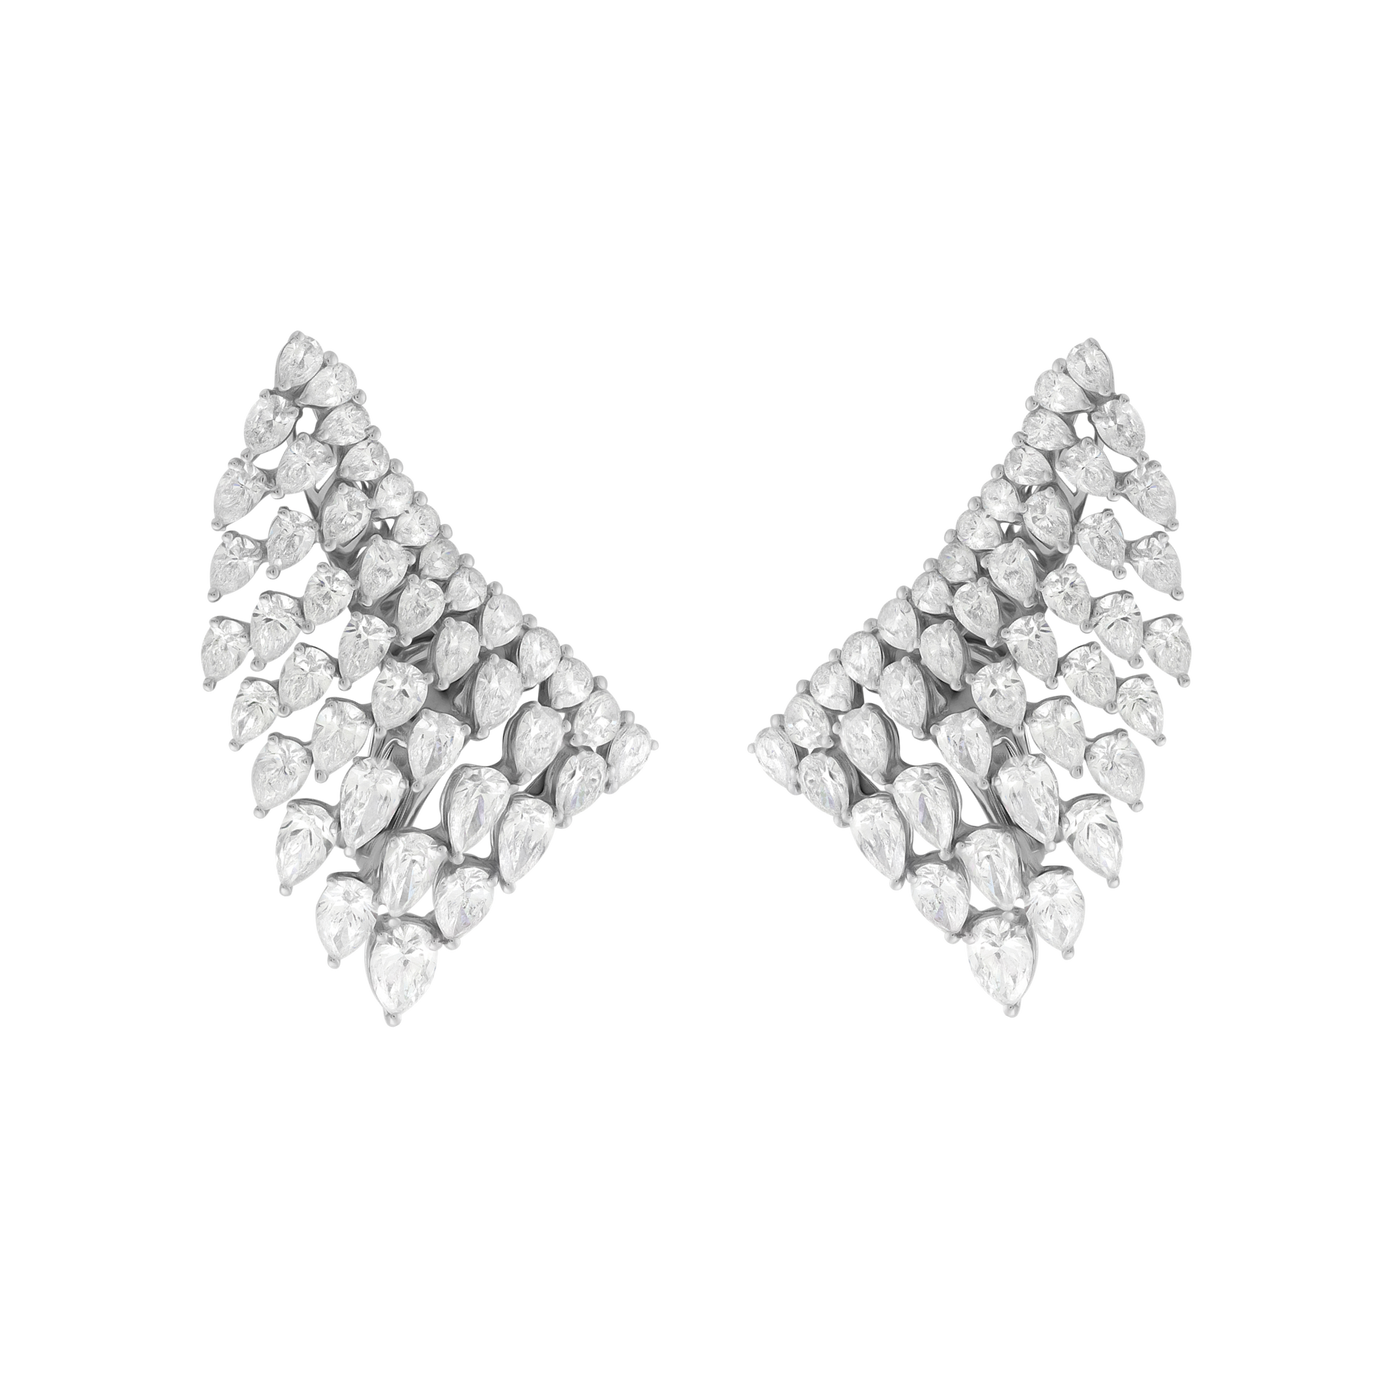 Yessayan 18K White Gold Diamond Wing Cuff Earrings